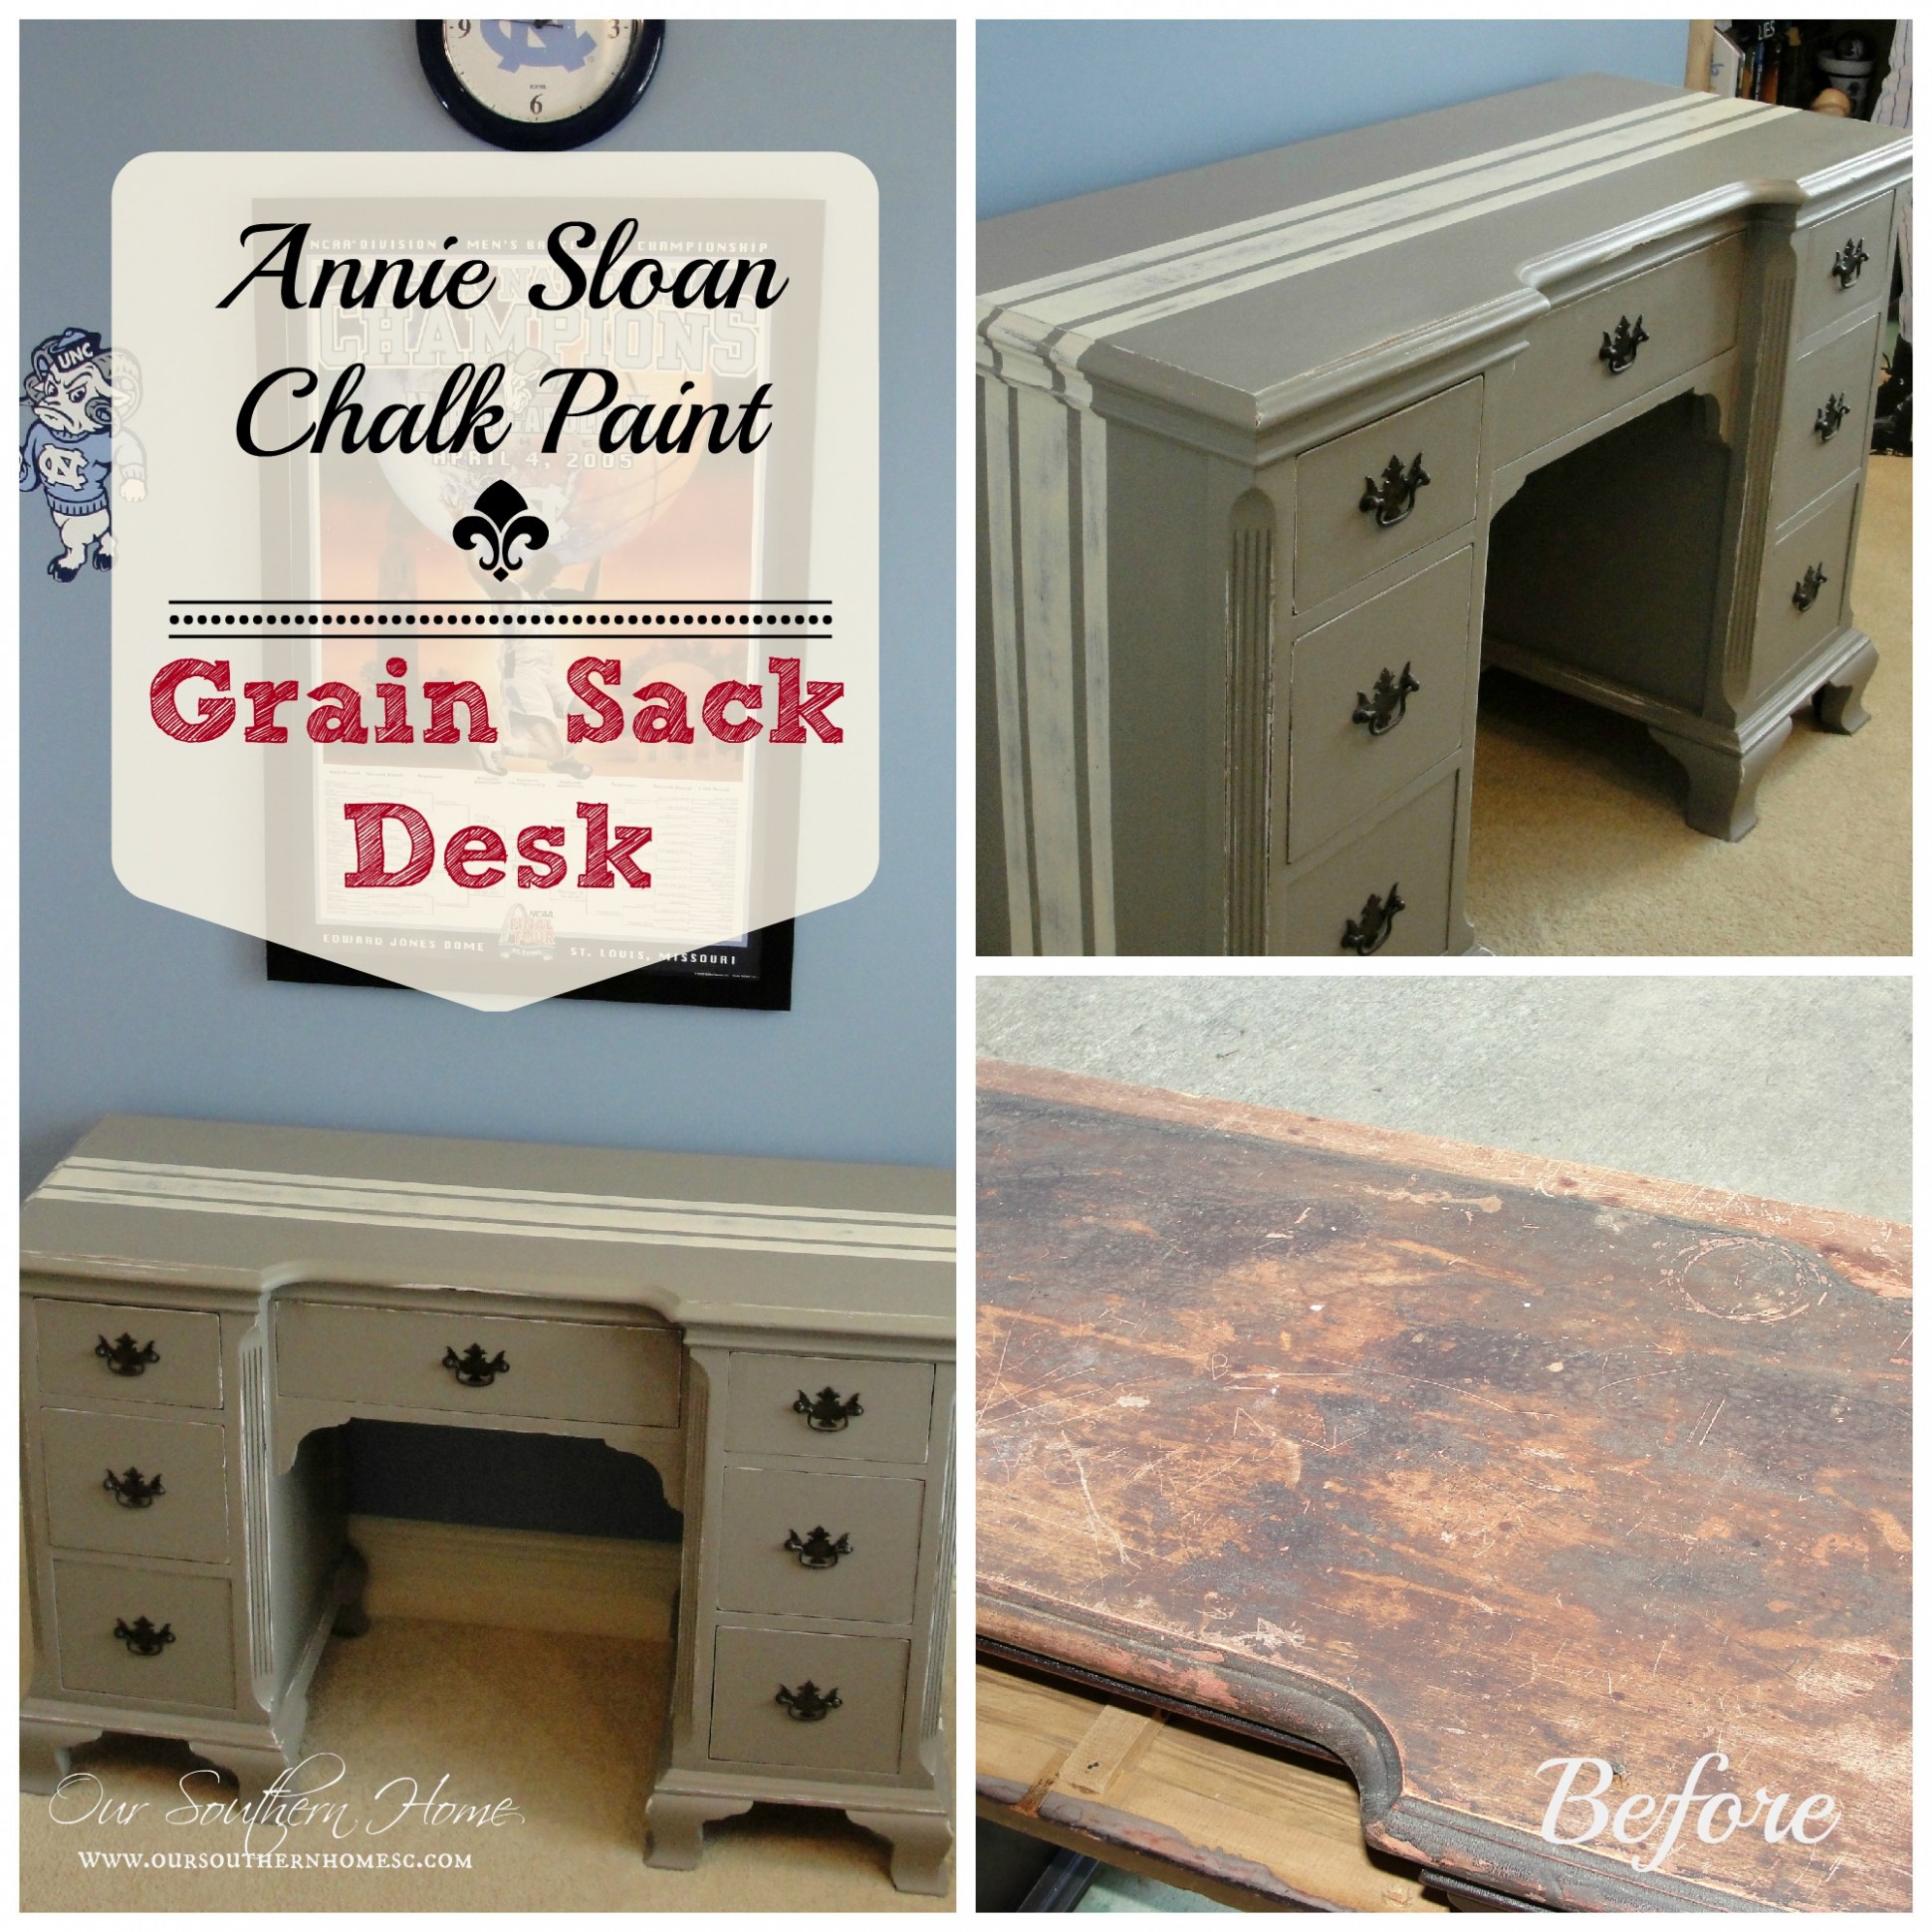 Grain Sack Desk Annie Sloan Chalk Paint Our Southern Home Annie Sloan Chalk Paint Near Me